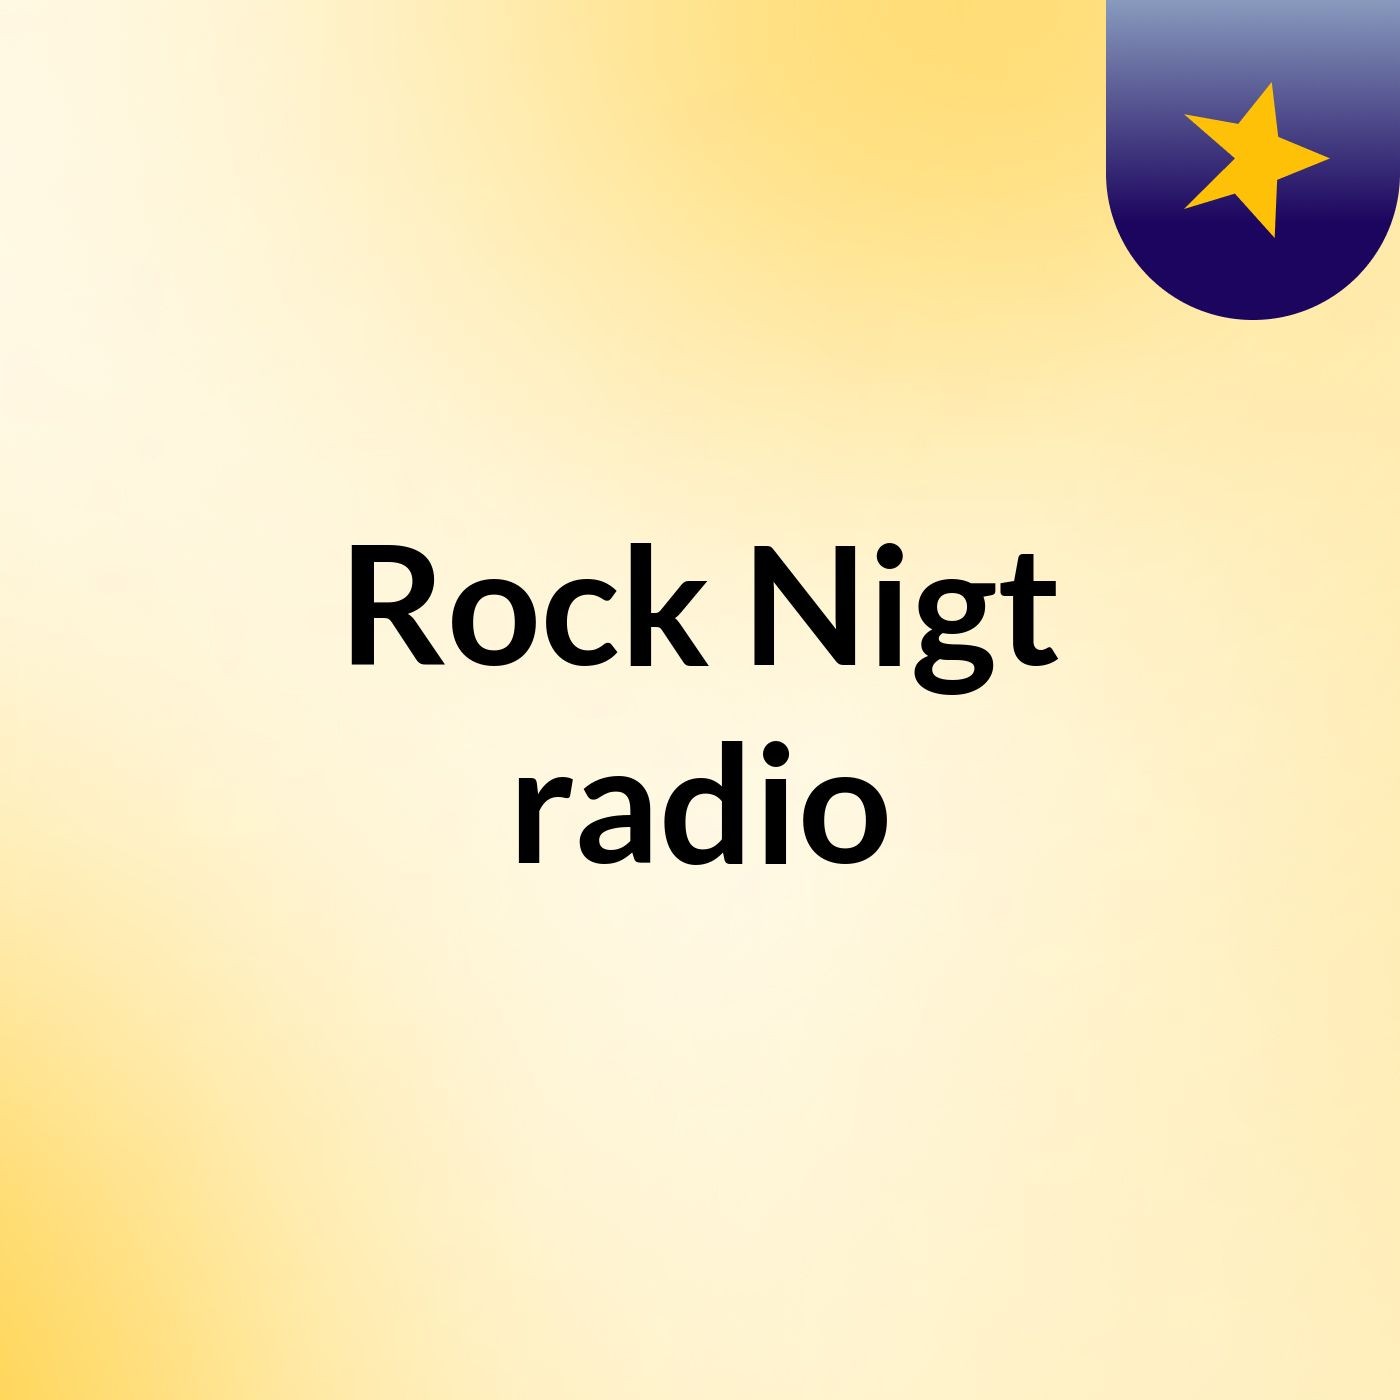 Rock Nigt radio